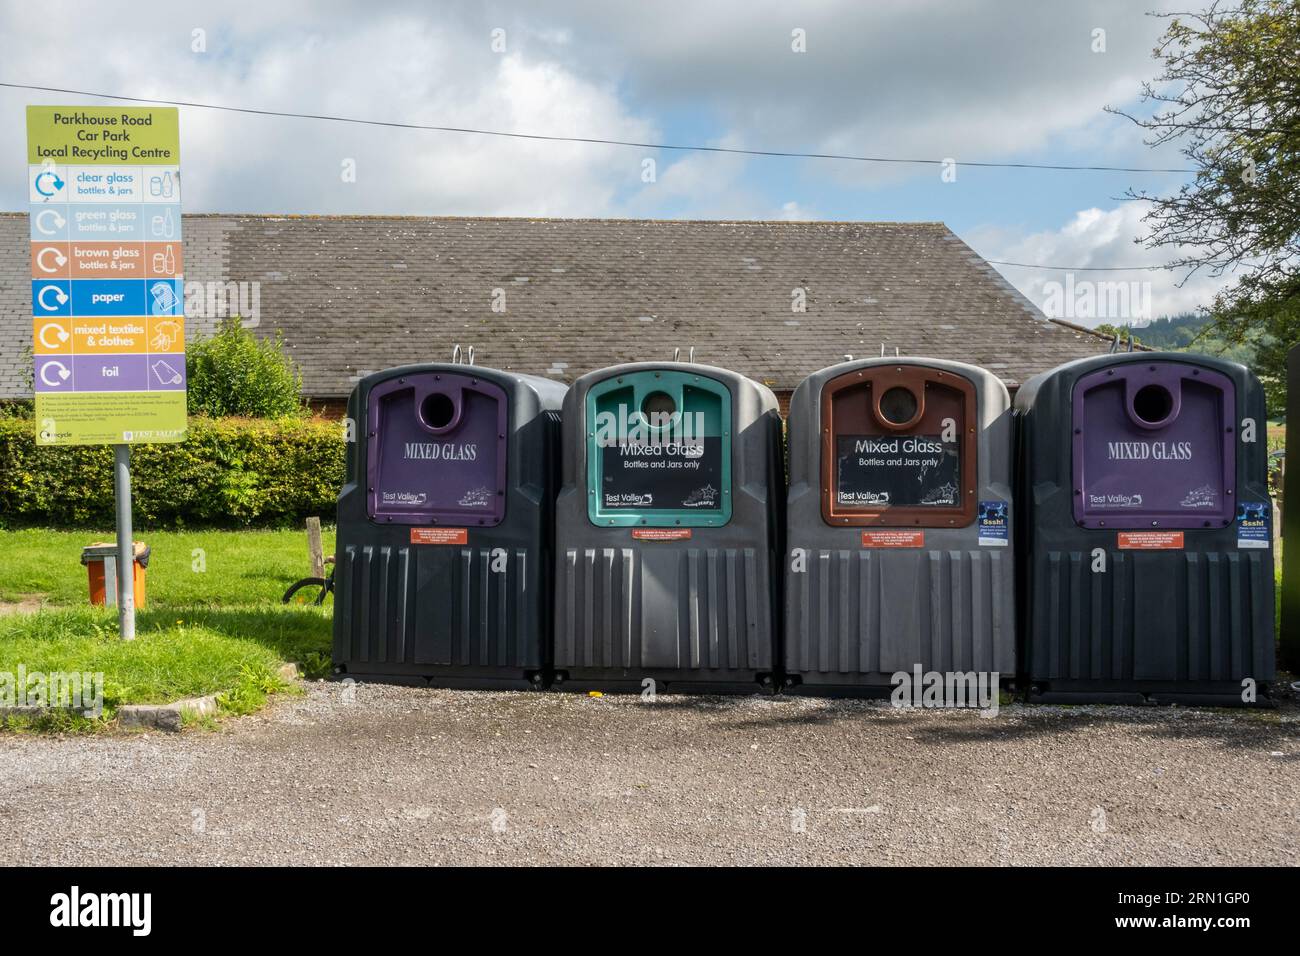 Point de recyclage local dans un parking de village avec poubelles pour différentes couleurs de verre, Angleterre, Royaume-Uni Banque D'Images